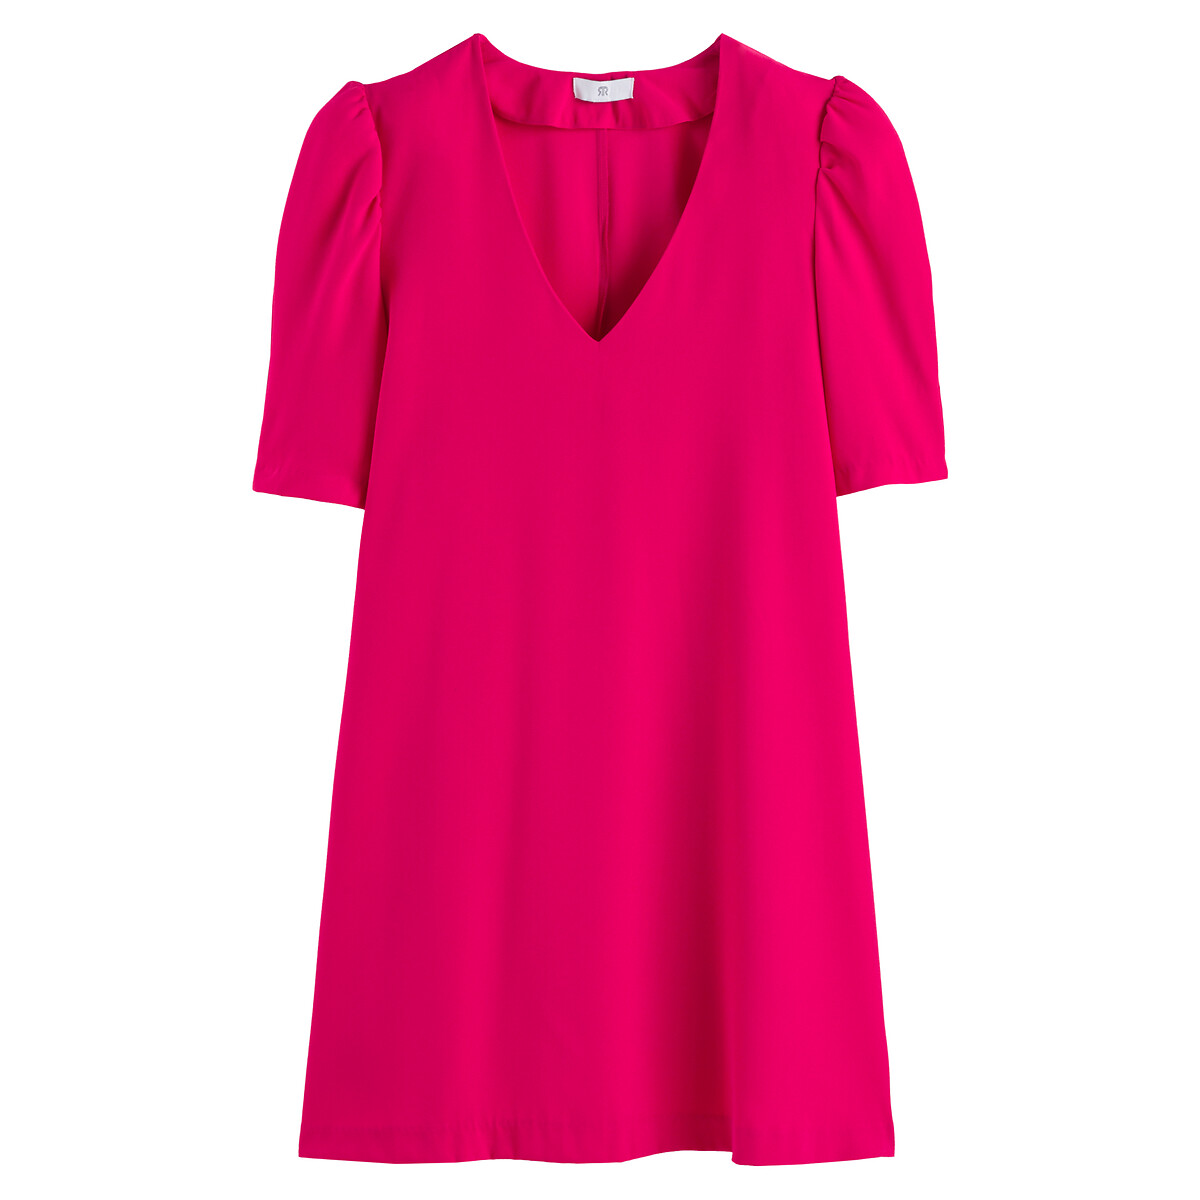 Платье Короткое с V-образным вырезом короткие рукава 42 розовый LaRedoute, размер 42 - фото 5